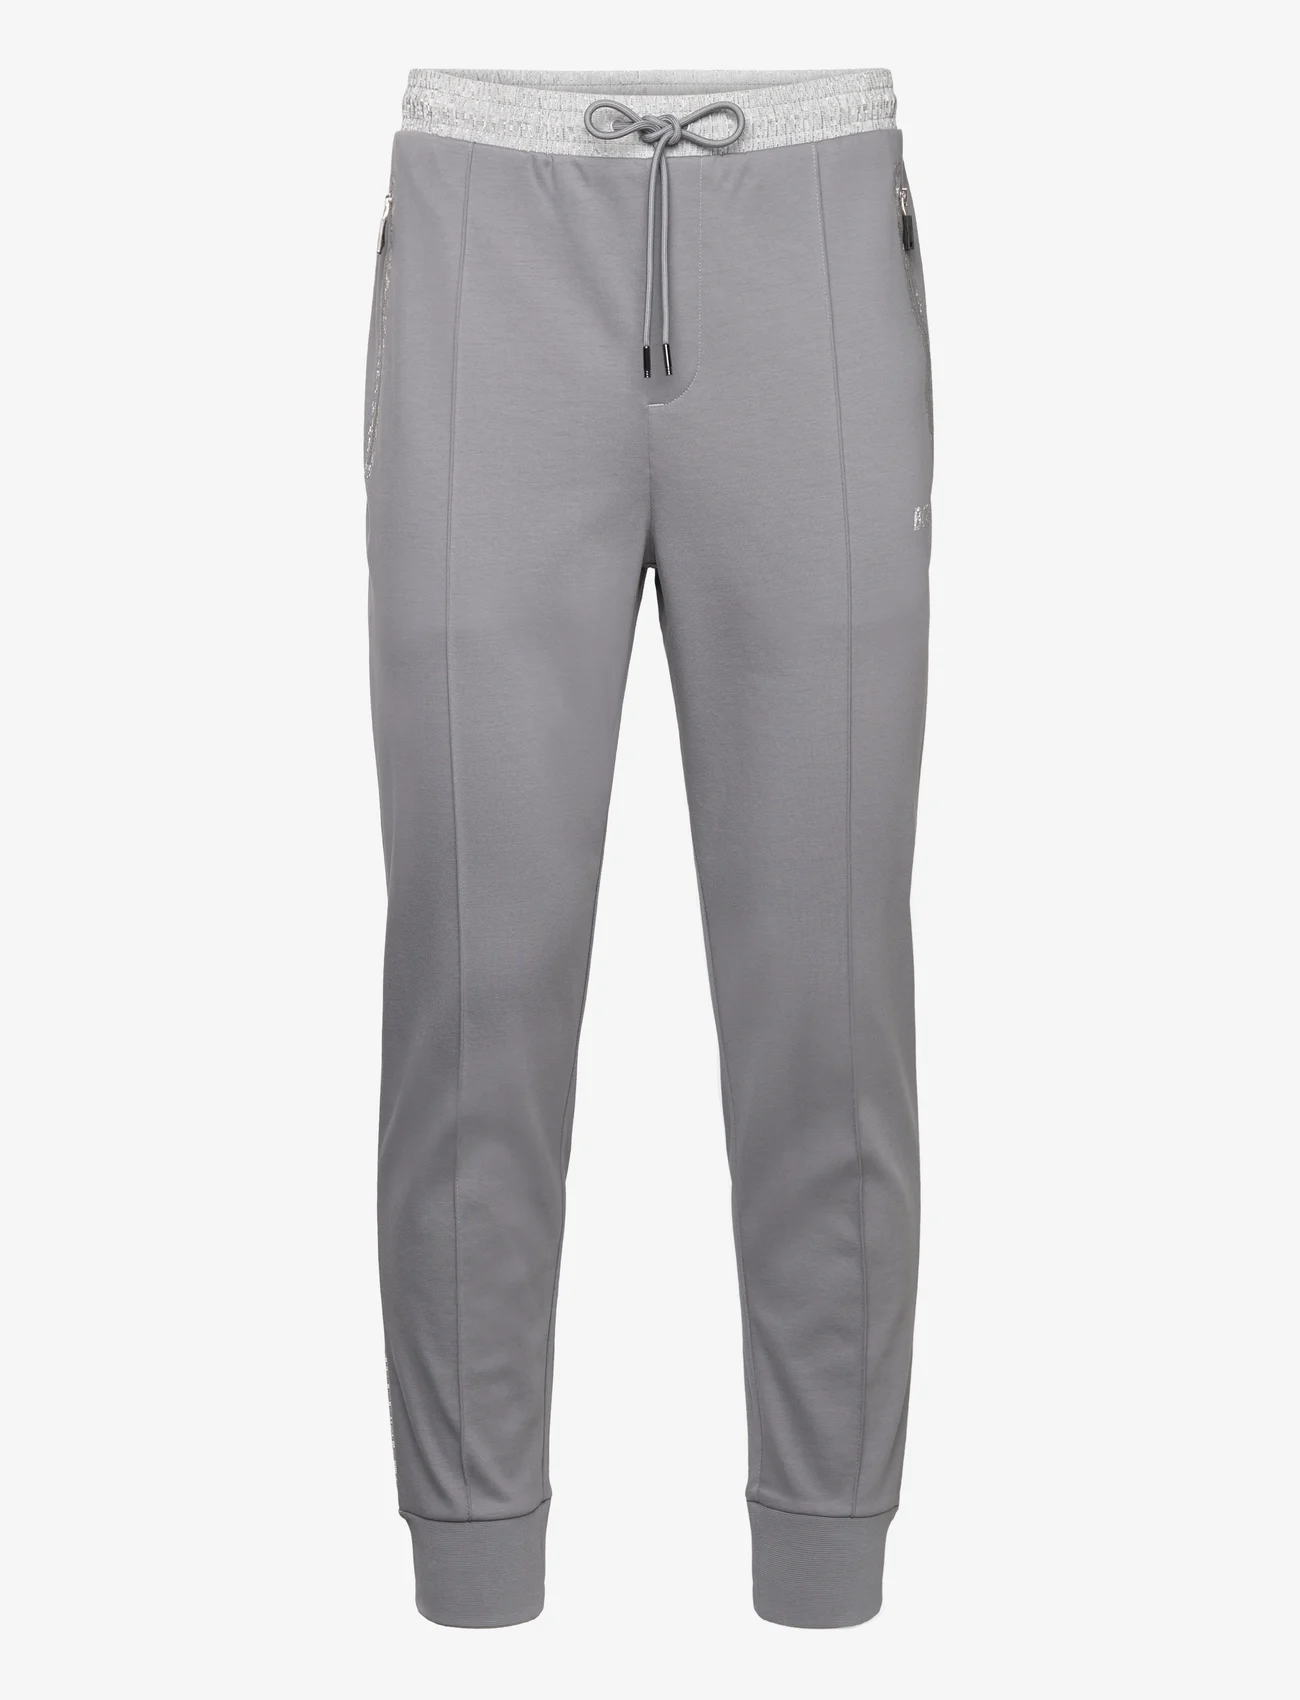 BOSS - Hadiko Mirror - pants - medium grey - 0